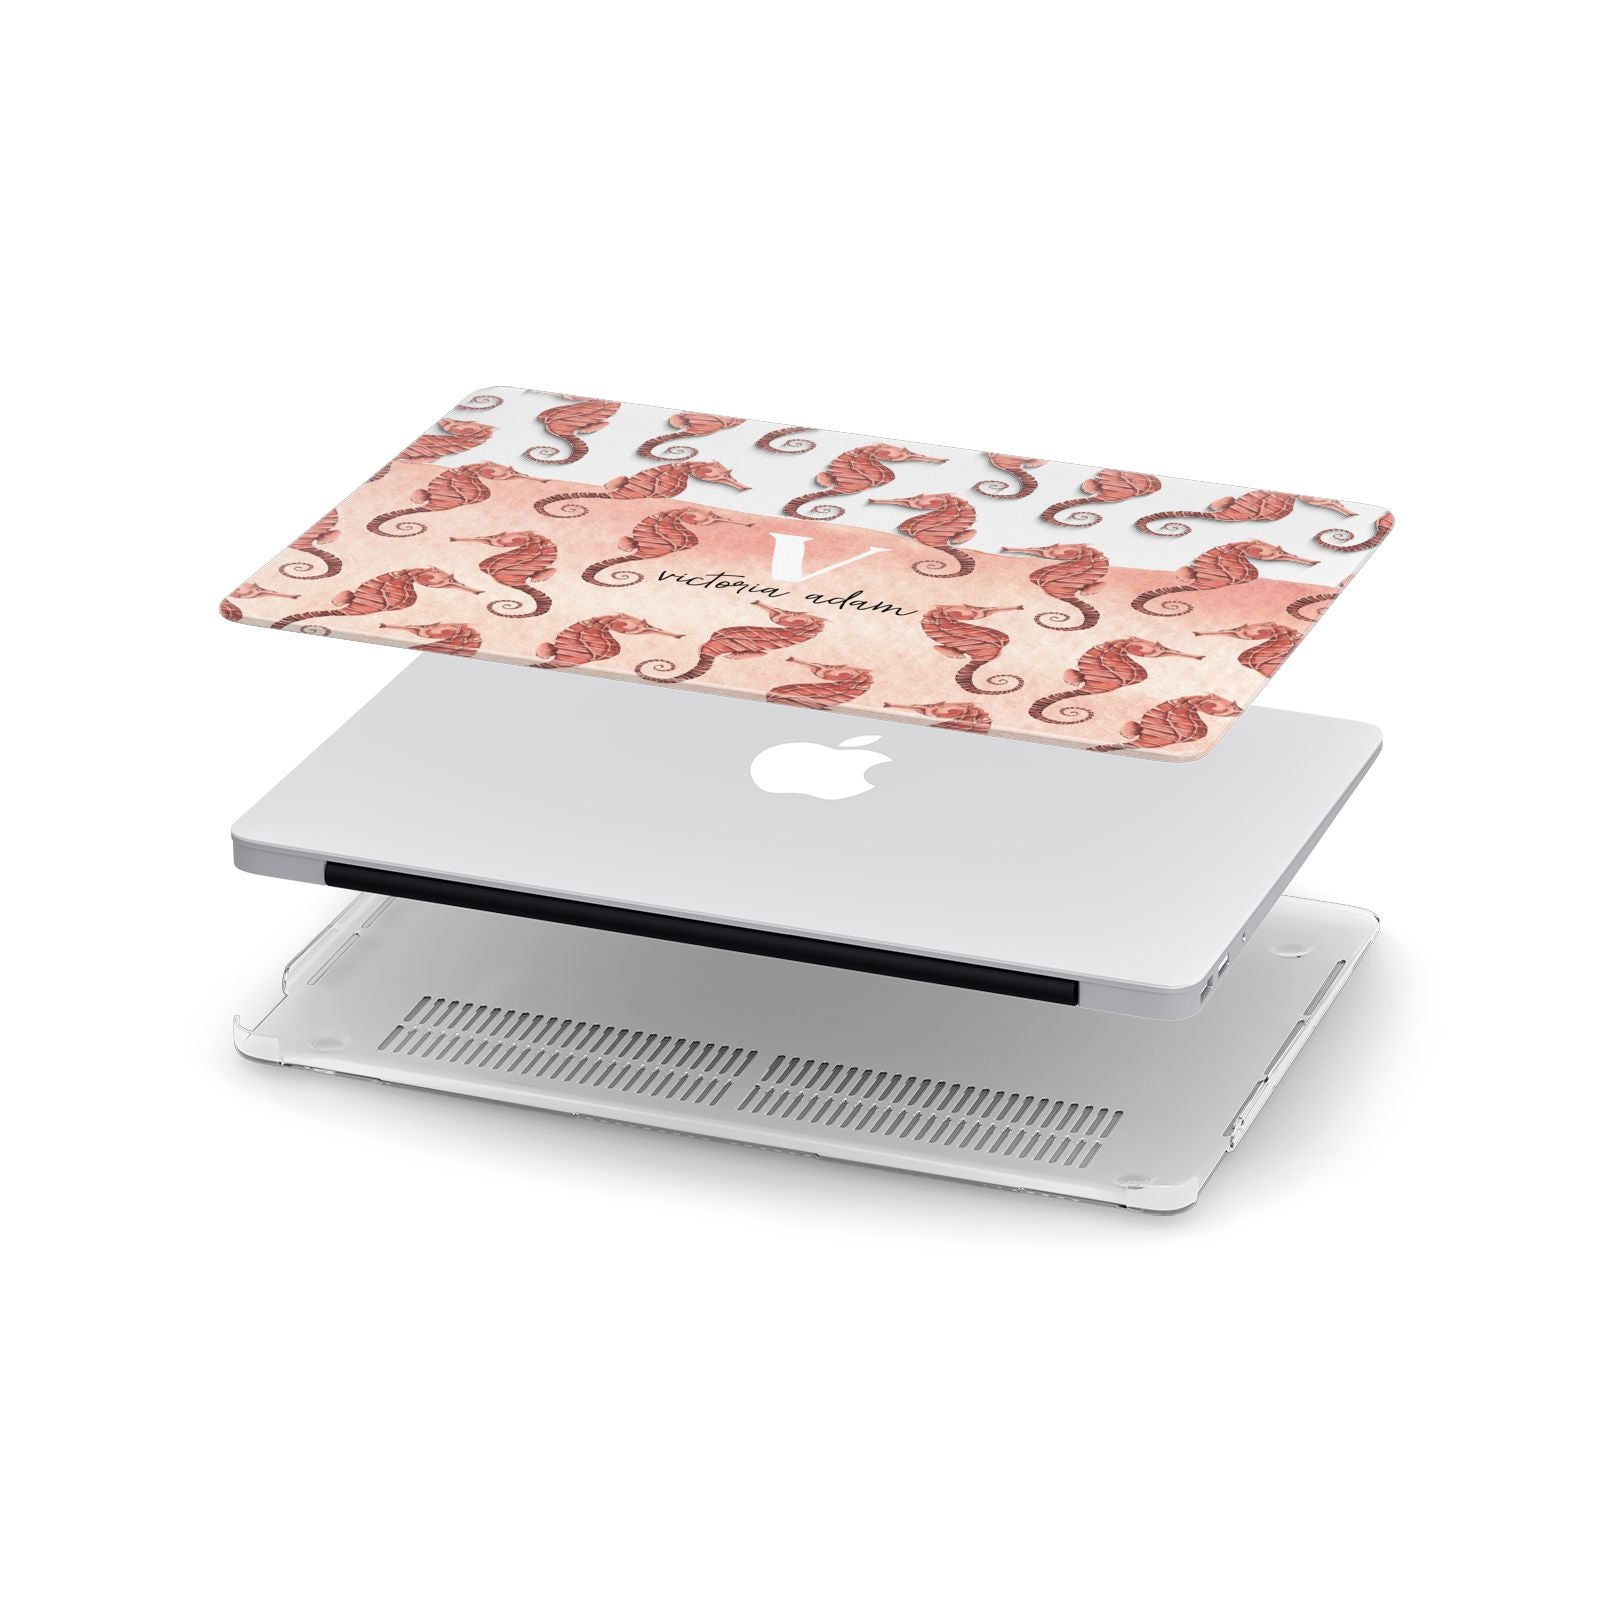 Sea Horse Personalised Apple MacBook Case in Detail